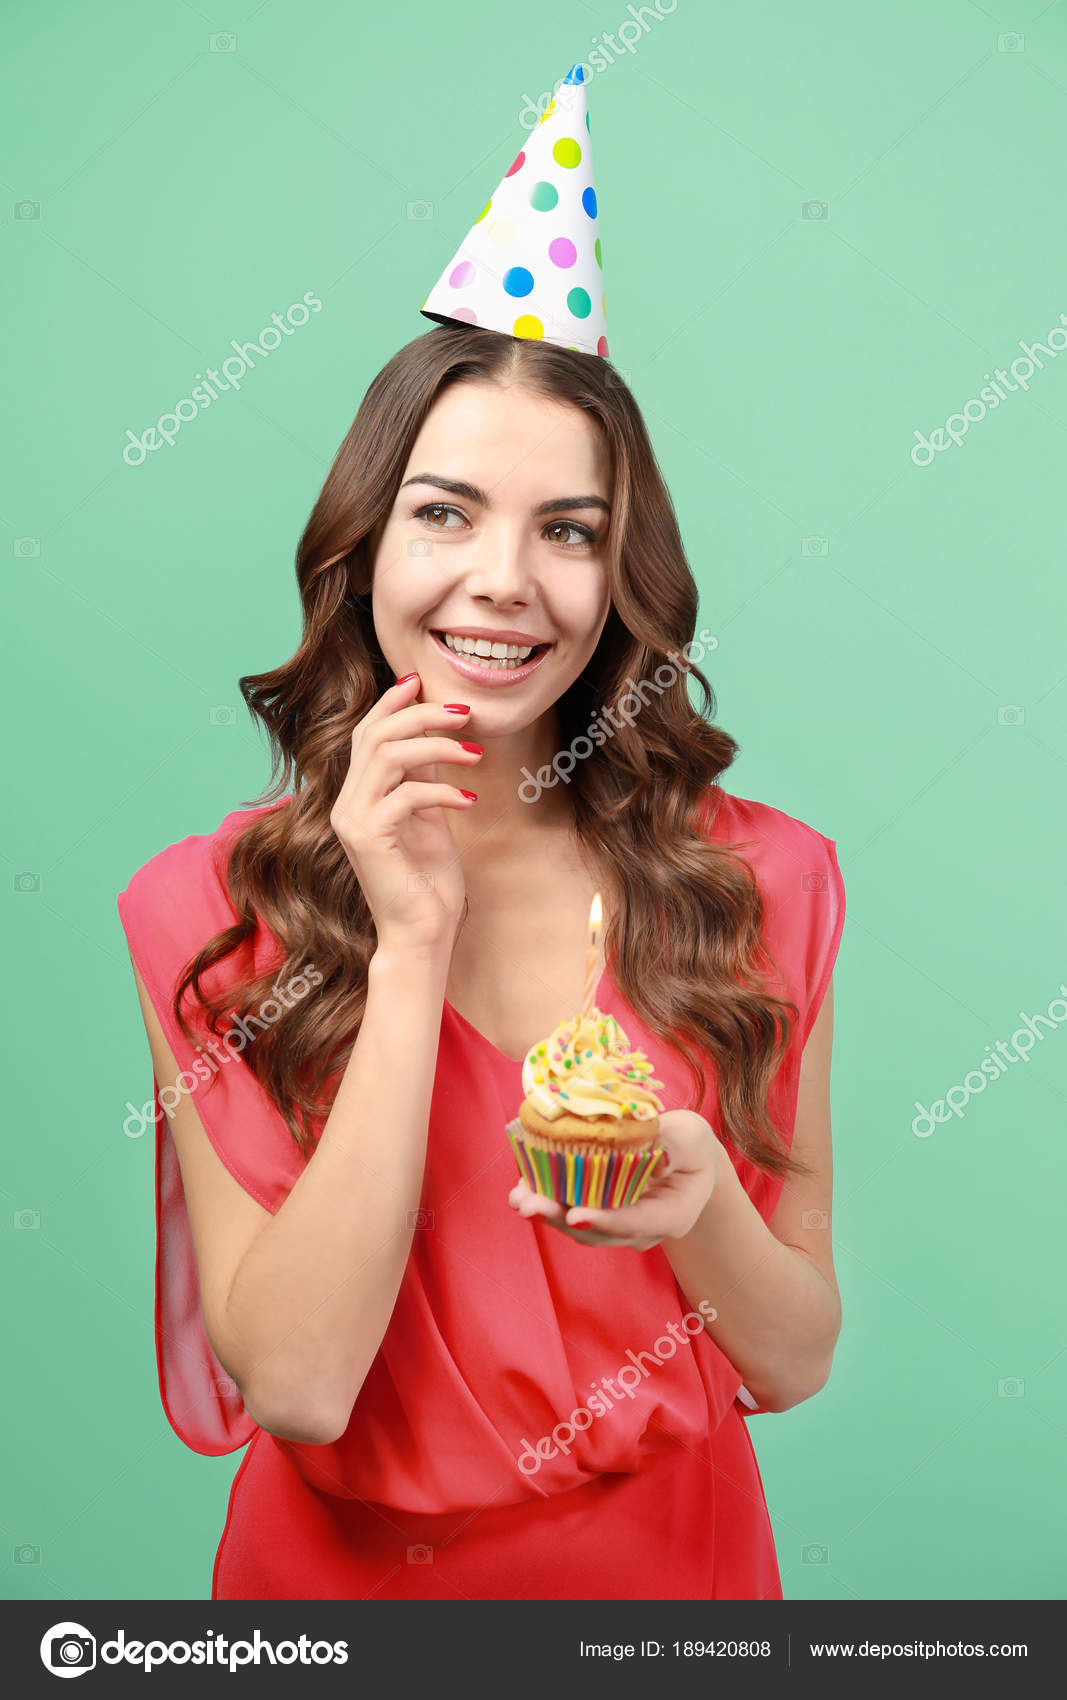 Torta De Cumpleaños Con Velas En El Fondo De Color Fotos, retratos